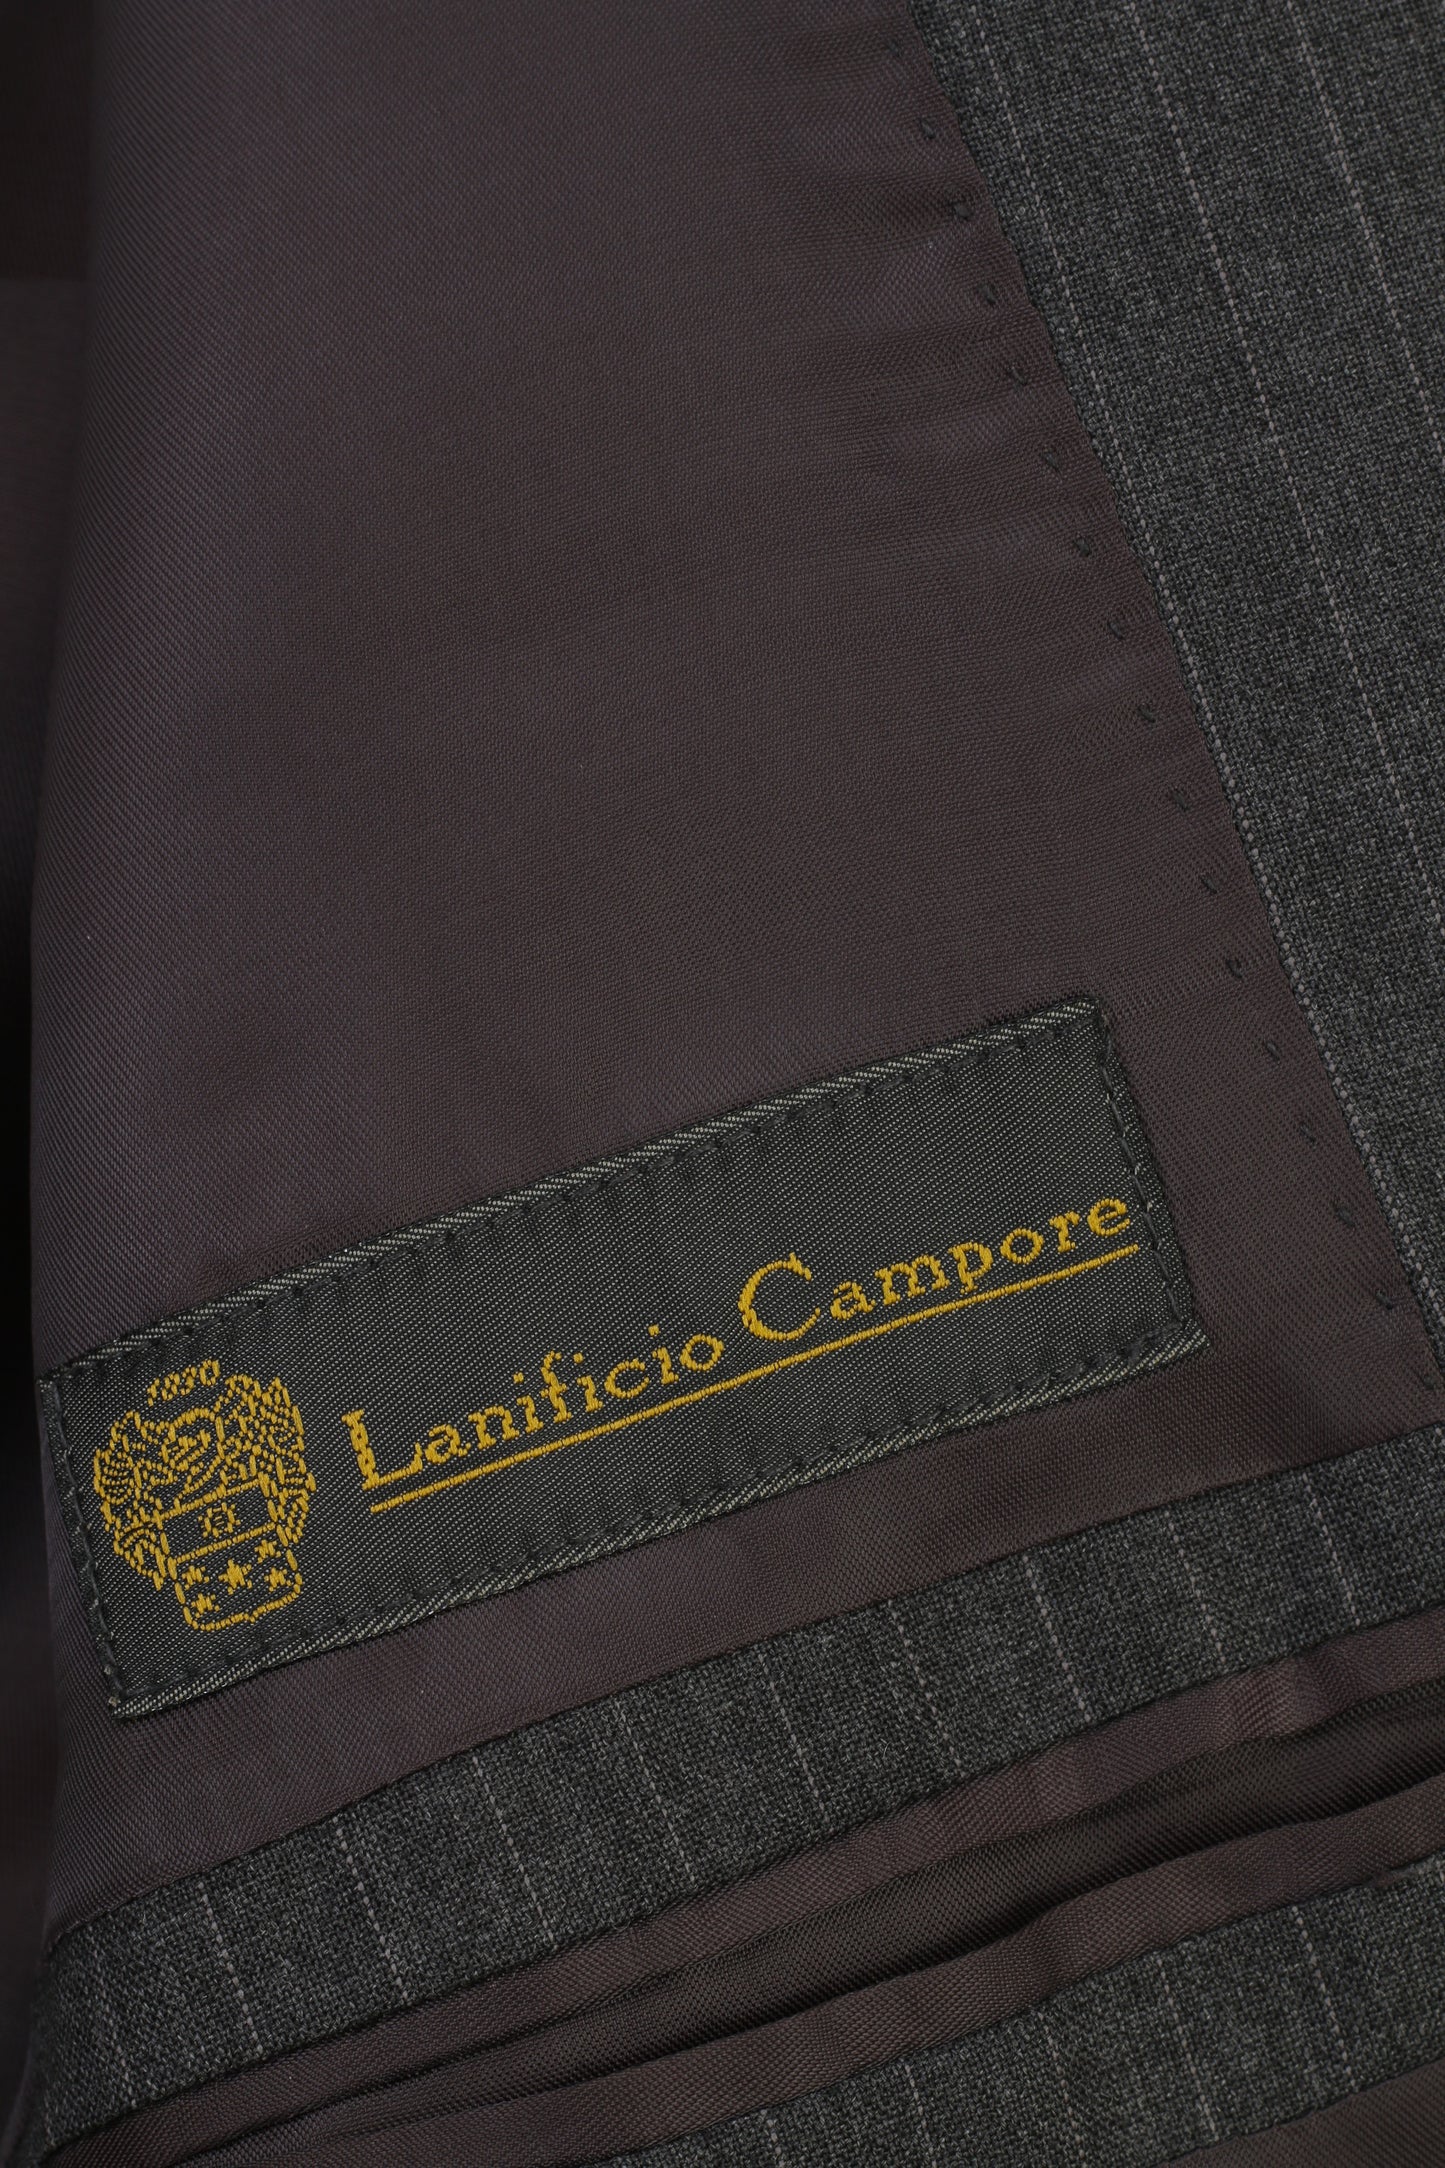 Lanificio  Campore Men 48 Suit Grey Via Piana Wool  Striped Elegant Top